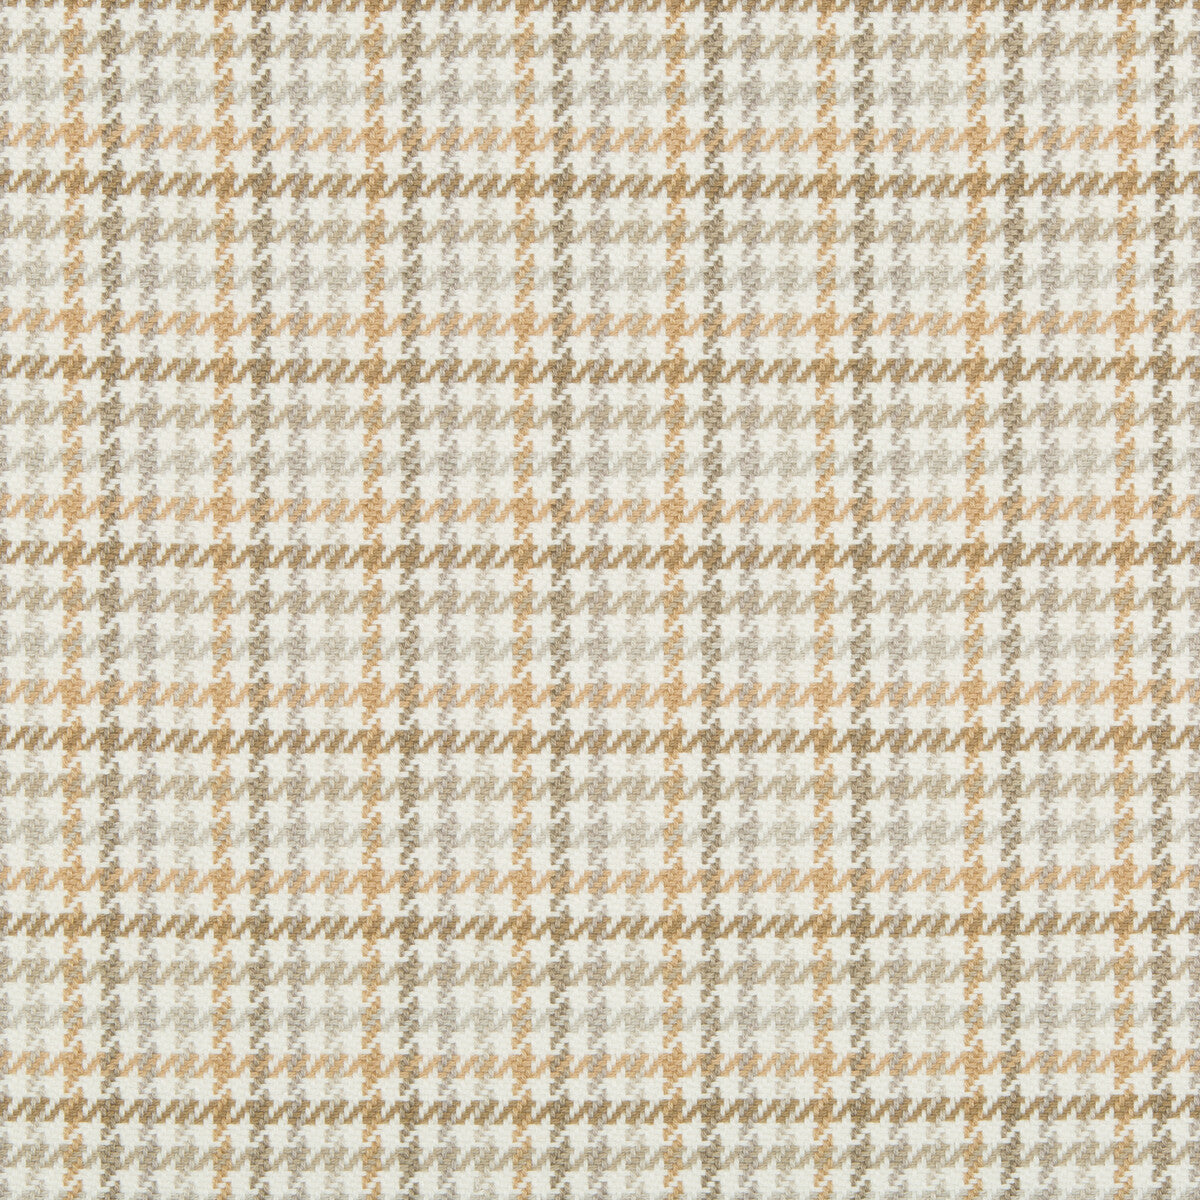 Kravet Basics fabric in 35269-16 color - pattern 35269.16.0 - by Kravet Basics